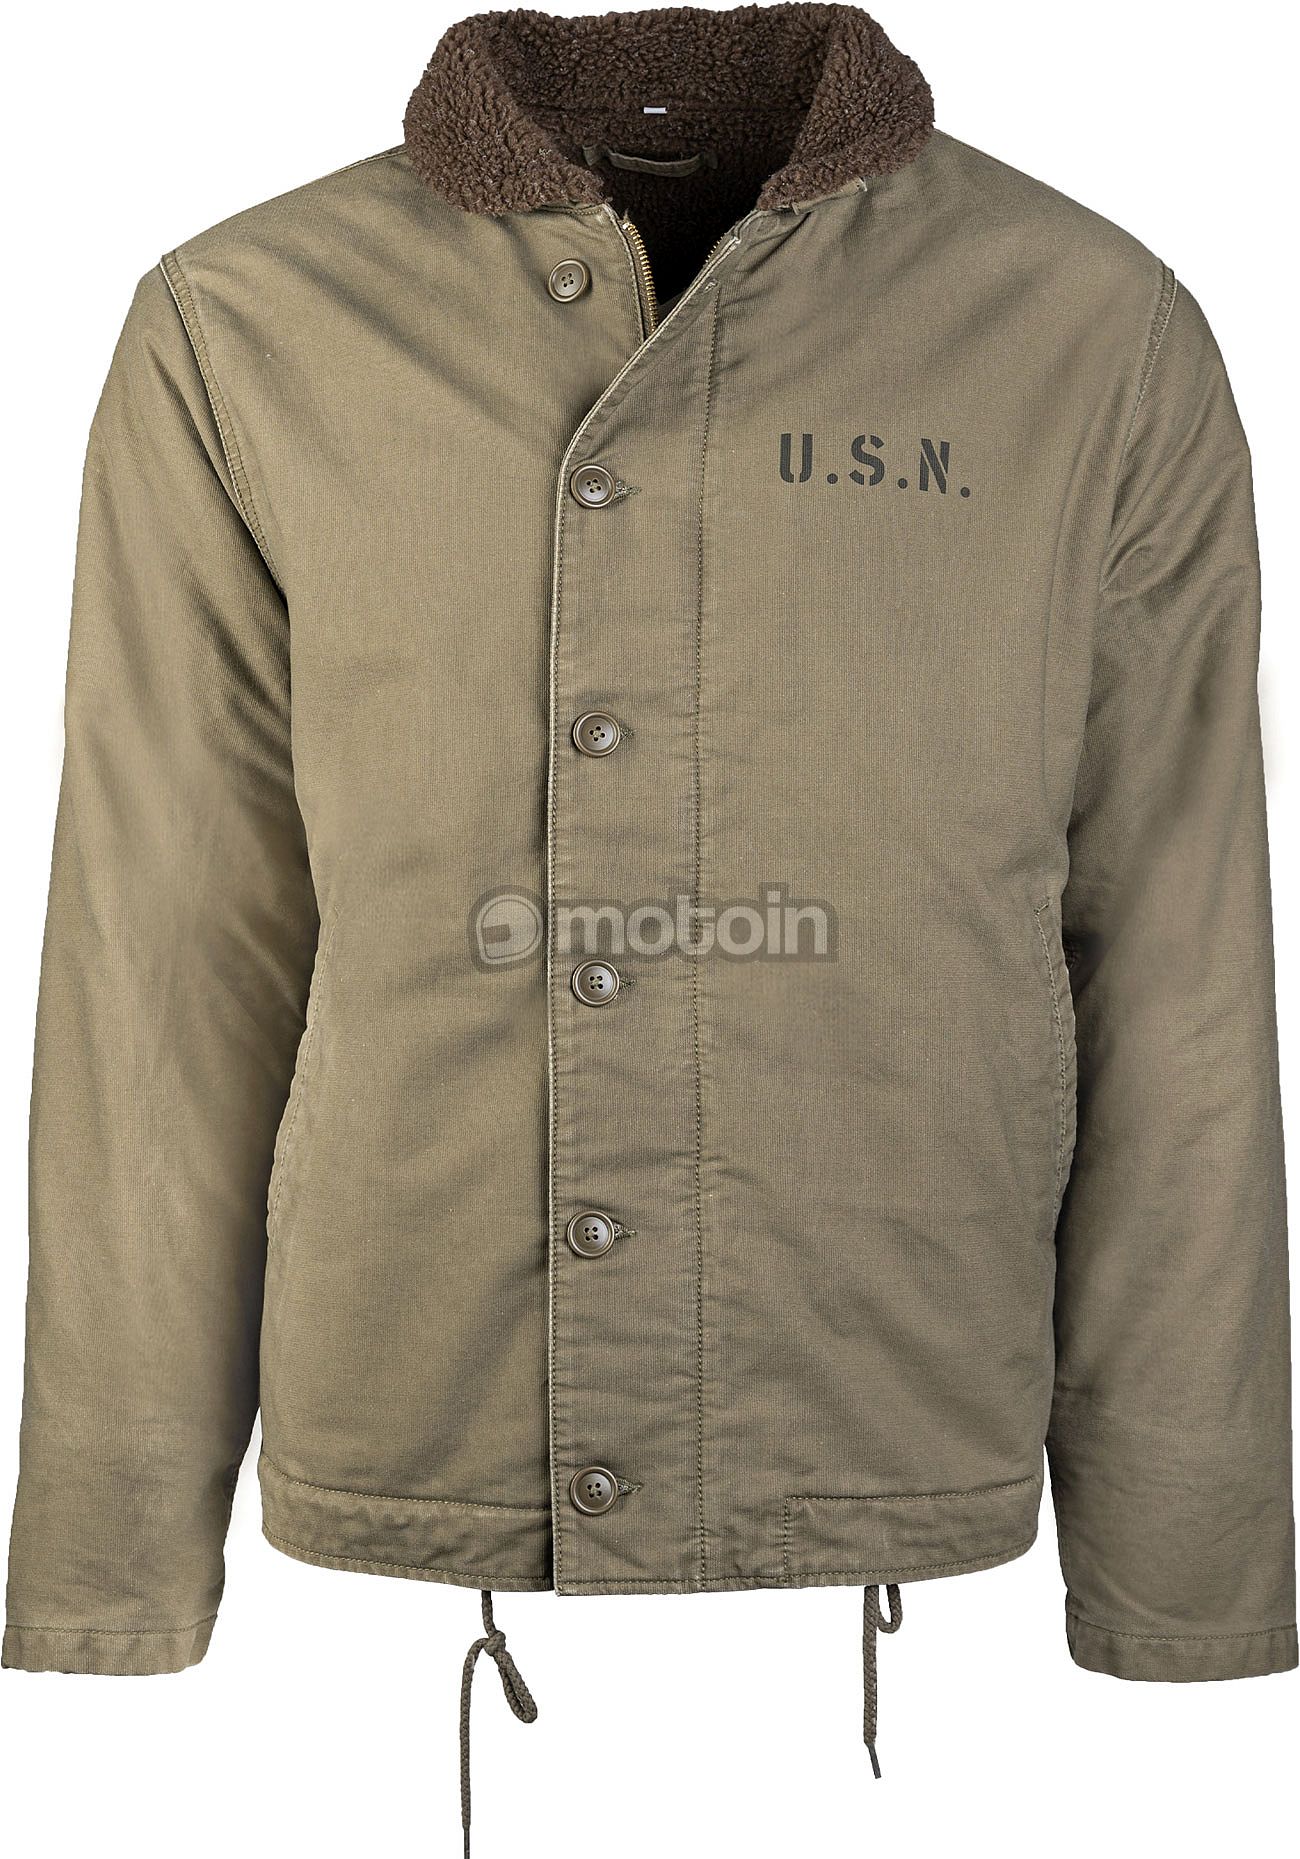 jacket US Navy N-1, Mil-Tec textile Deck